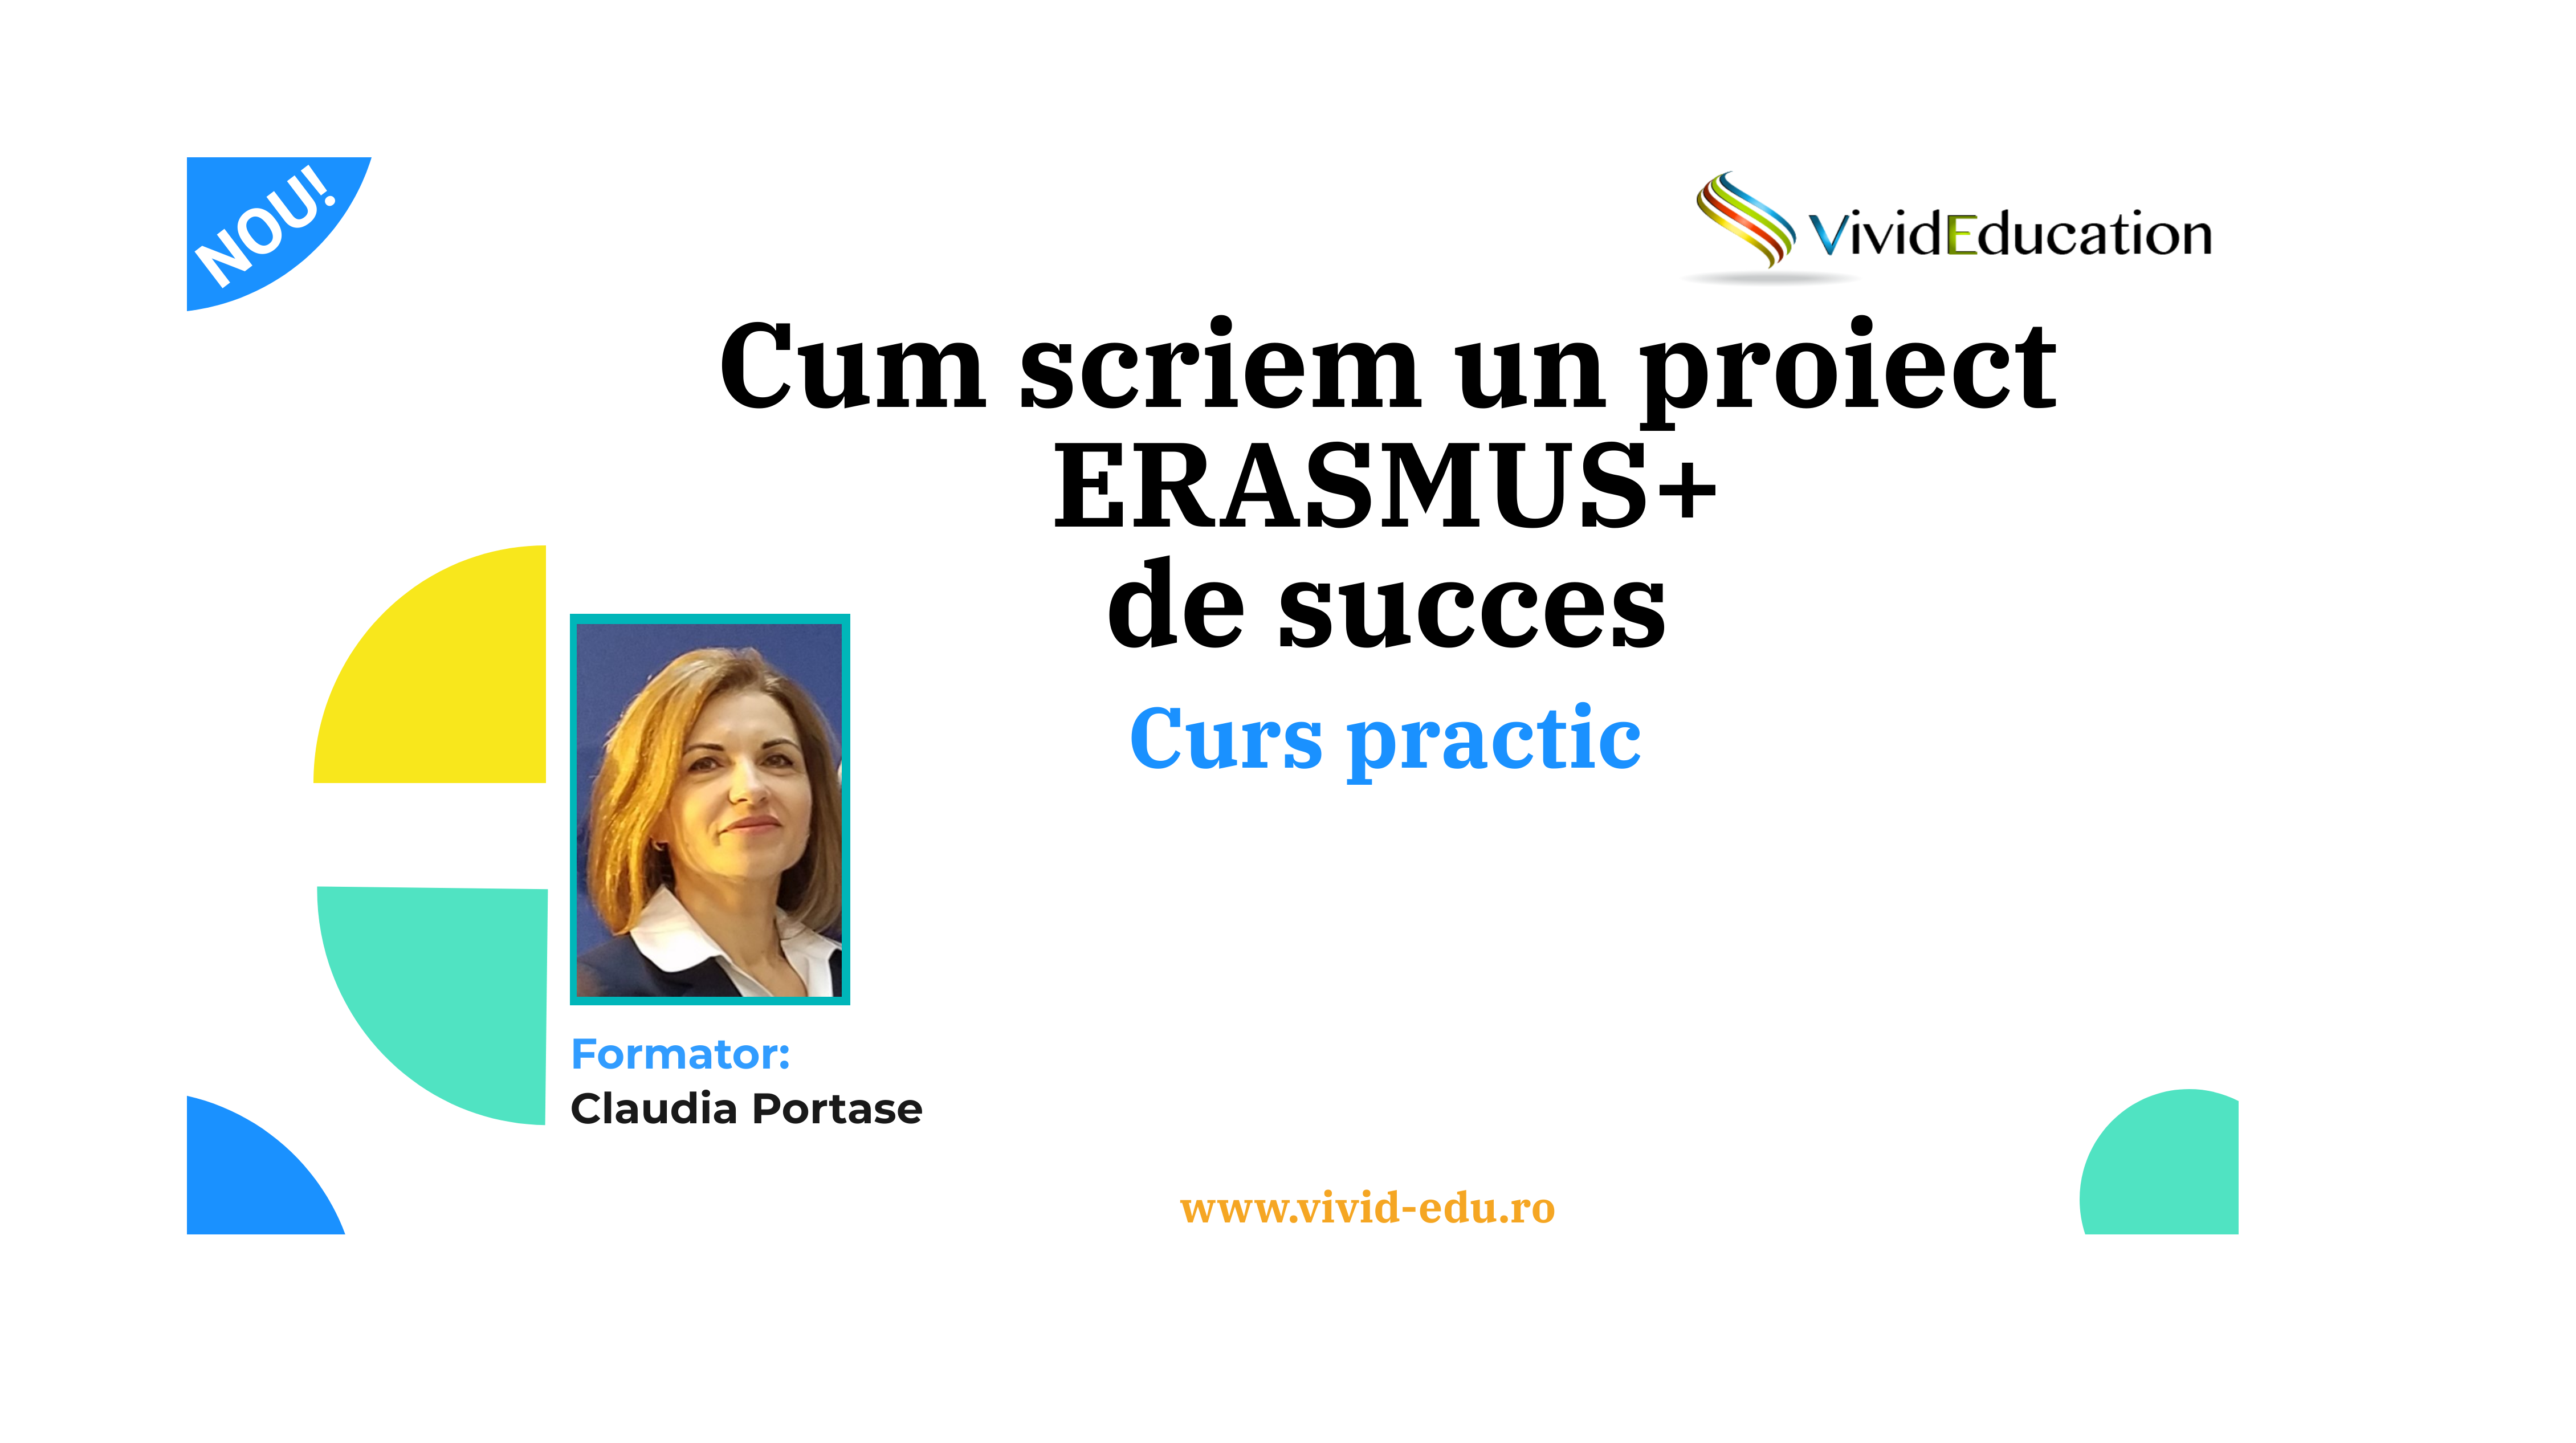 Curs practic ”Cum scriem un proiect Erasmus+ de succes” (9 dec.)